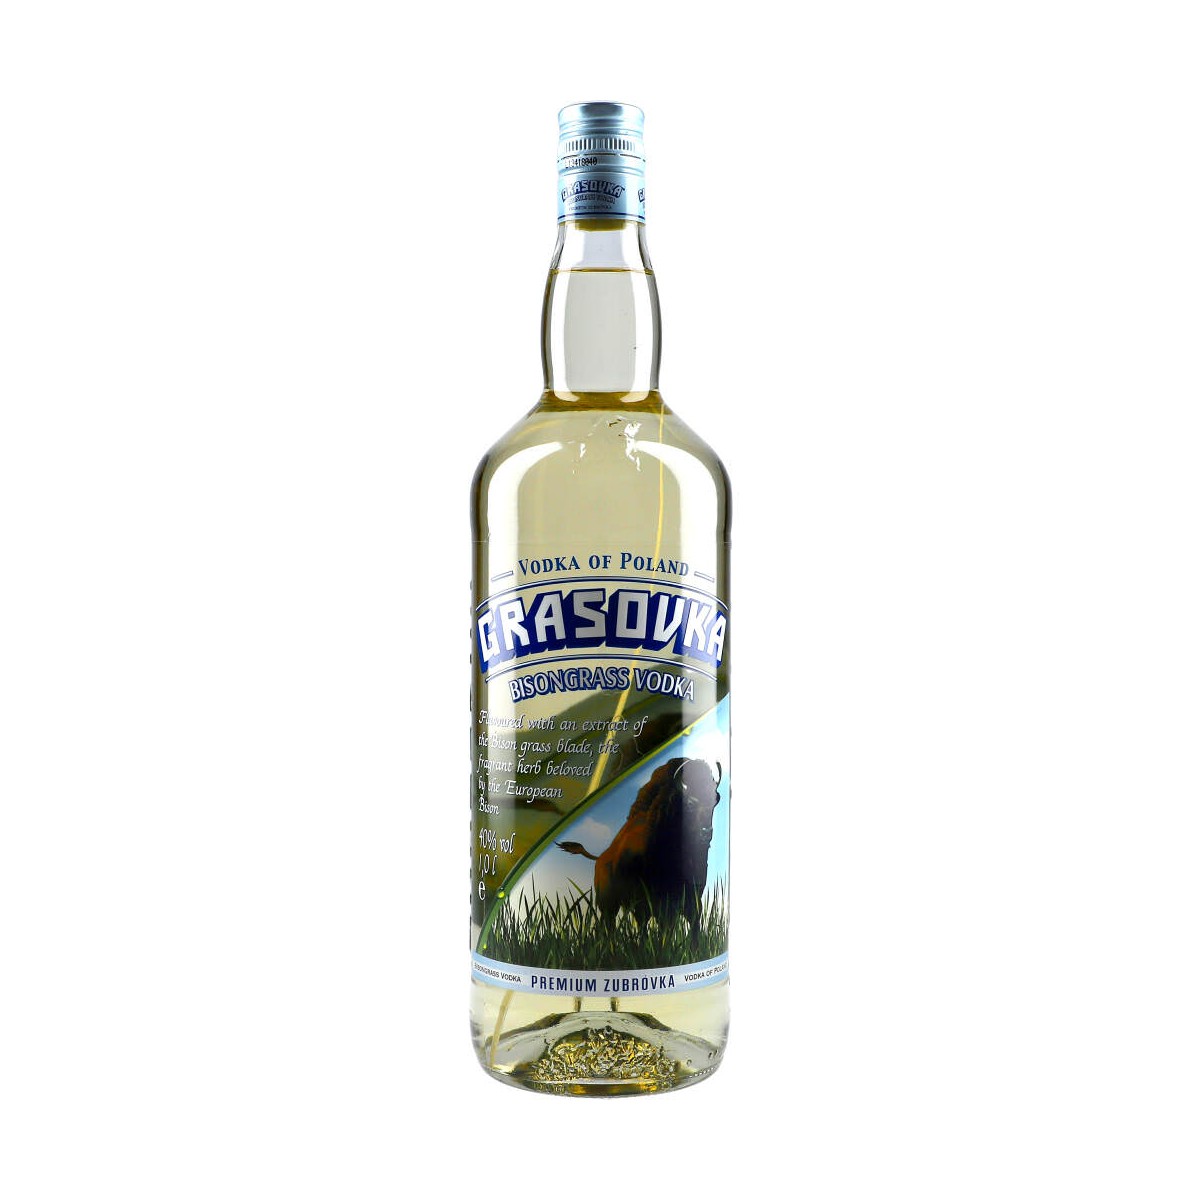 38% Bisongrass 100cl Grasovka Vodka